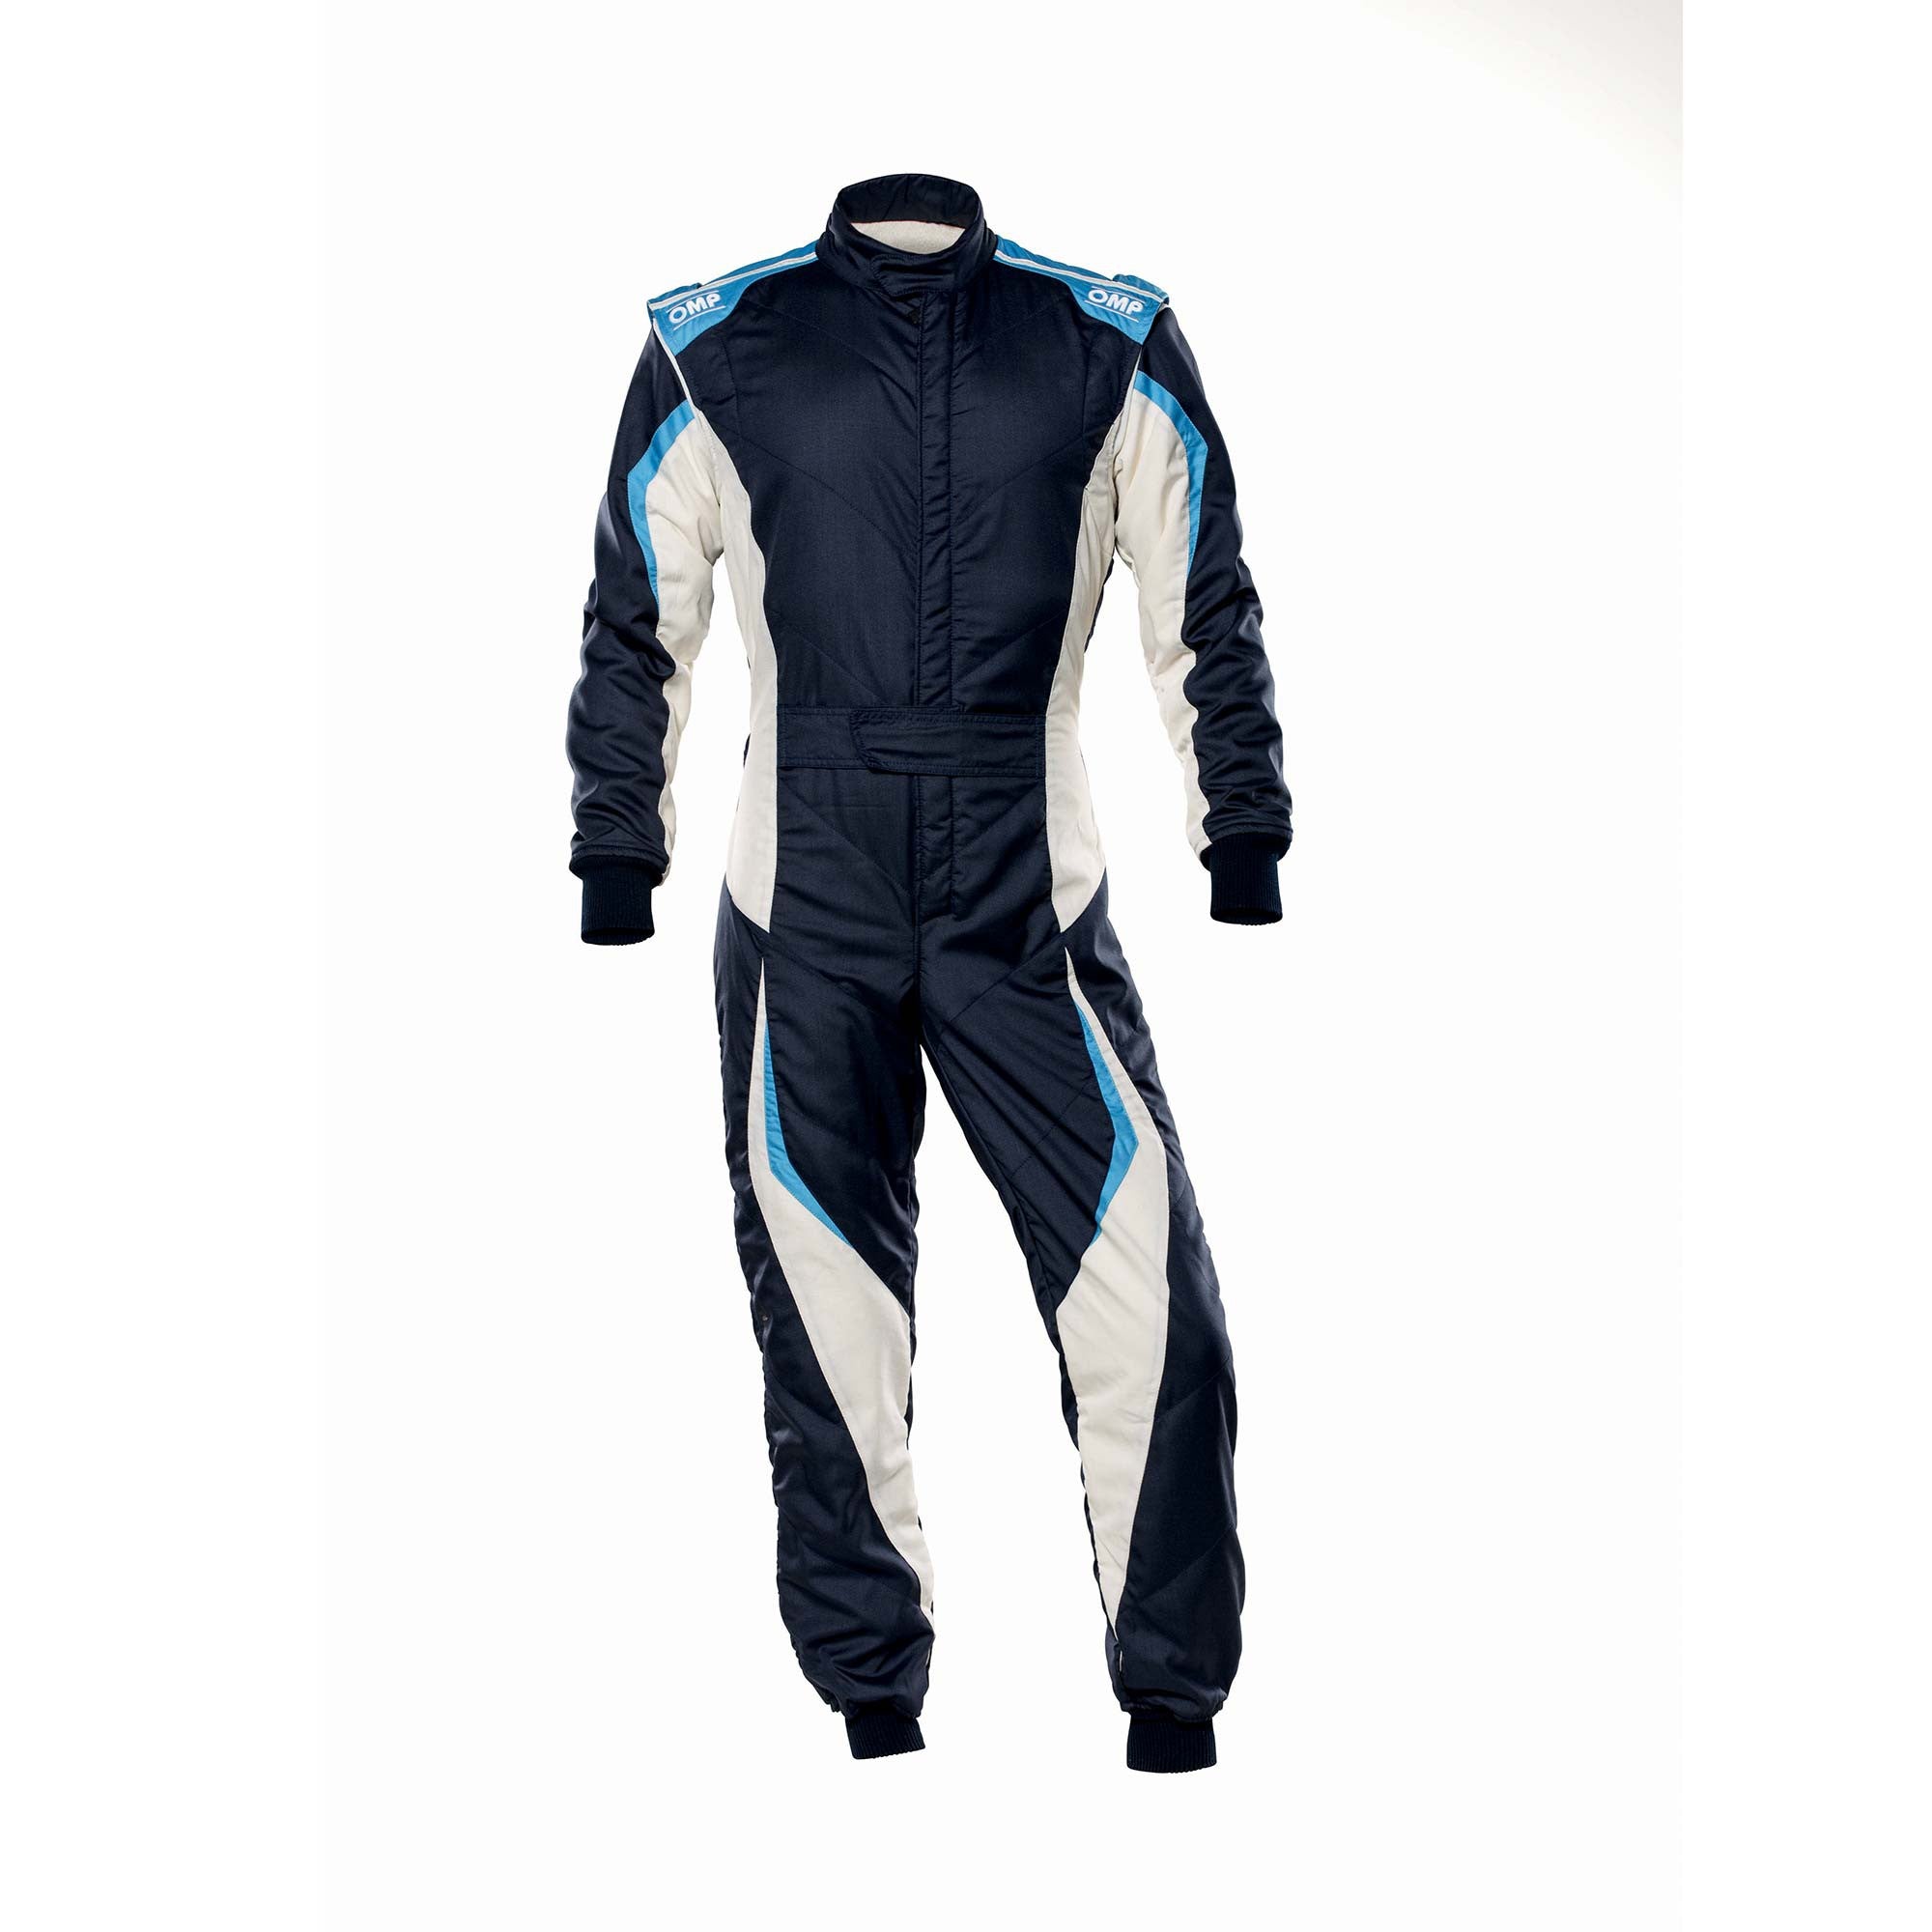 OMP IA0-1859-B01-246-54 Racing suit TECNICA EVO MY2021, FIA 8856-2018, navy blue/white/grey/cyan, size 54 Photo-0 